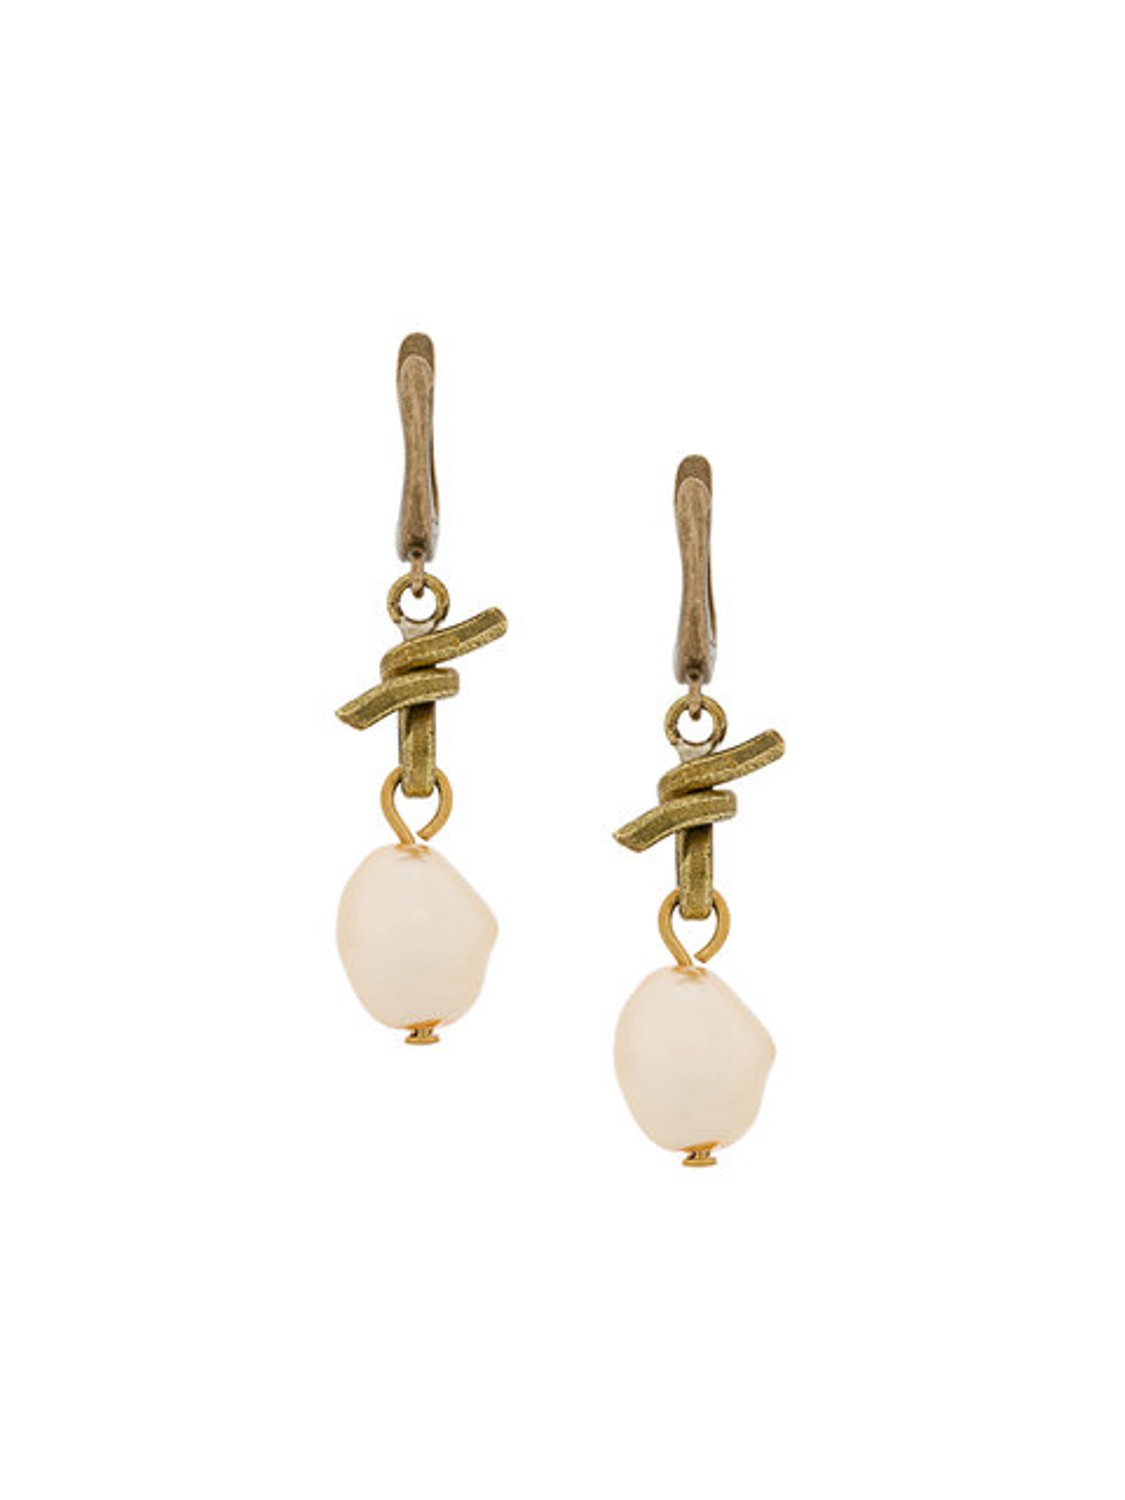 shop Marni Saldi Bijoux: Orecchini Marni, chiusura bloccata dietro, in ottone e perle.

Composizione: 100% ottone. number 1240